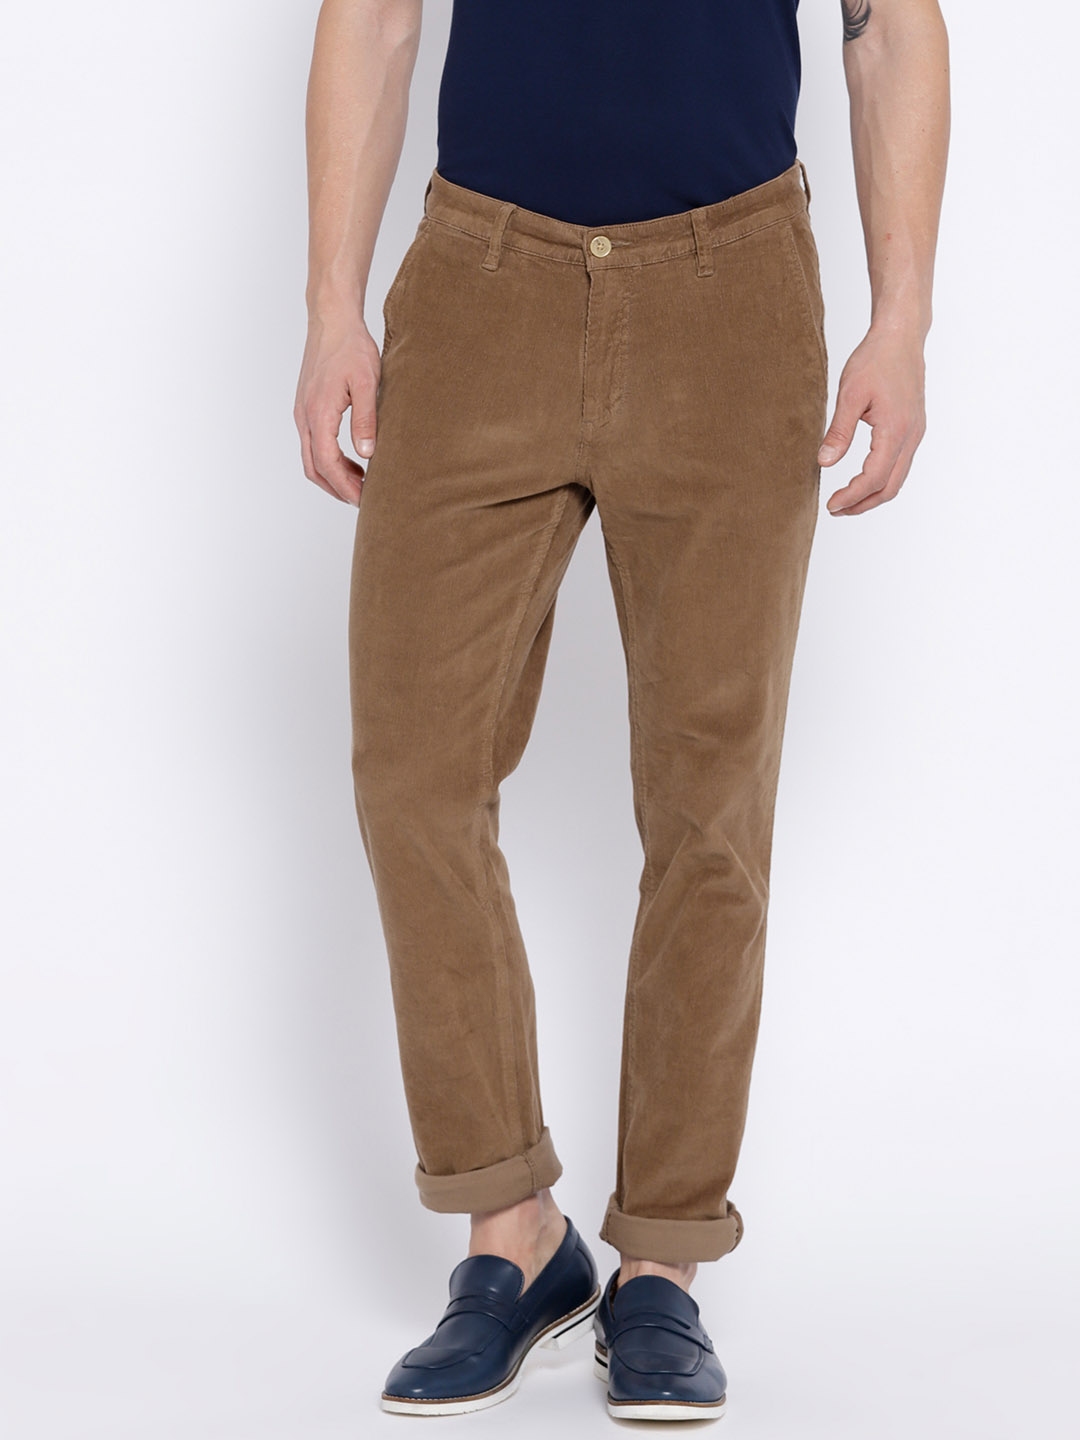 Beige Slim Fit Corduroy Trouser  Buy Beige Slim Fit Corduroy Trouser  online in India